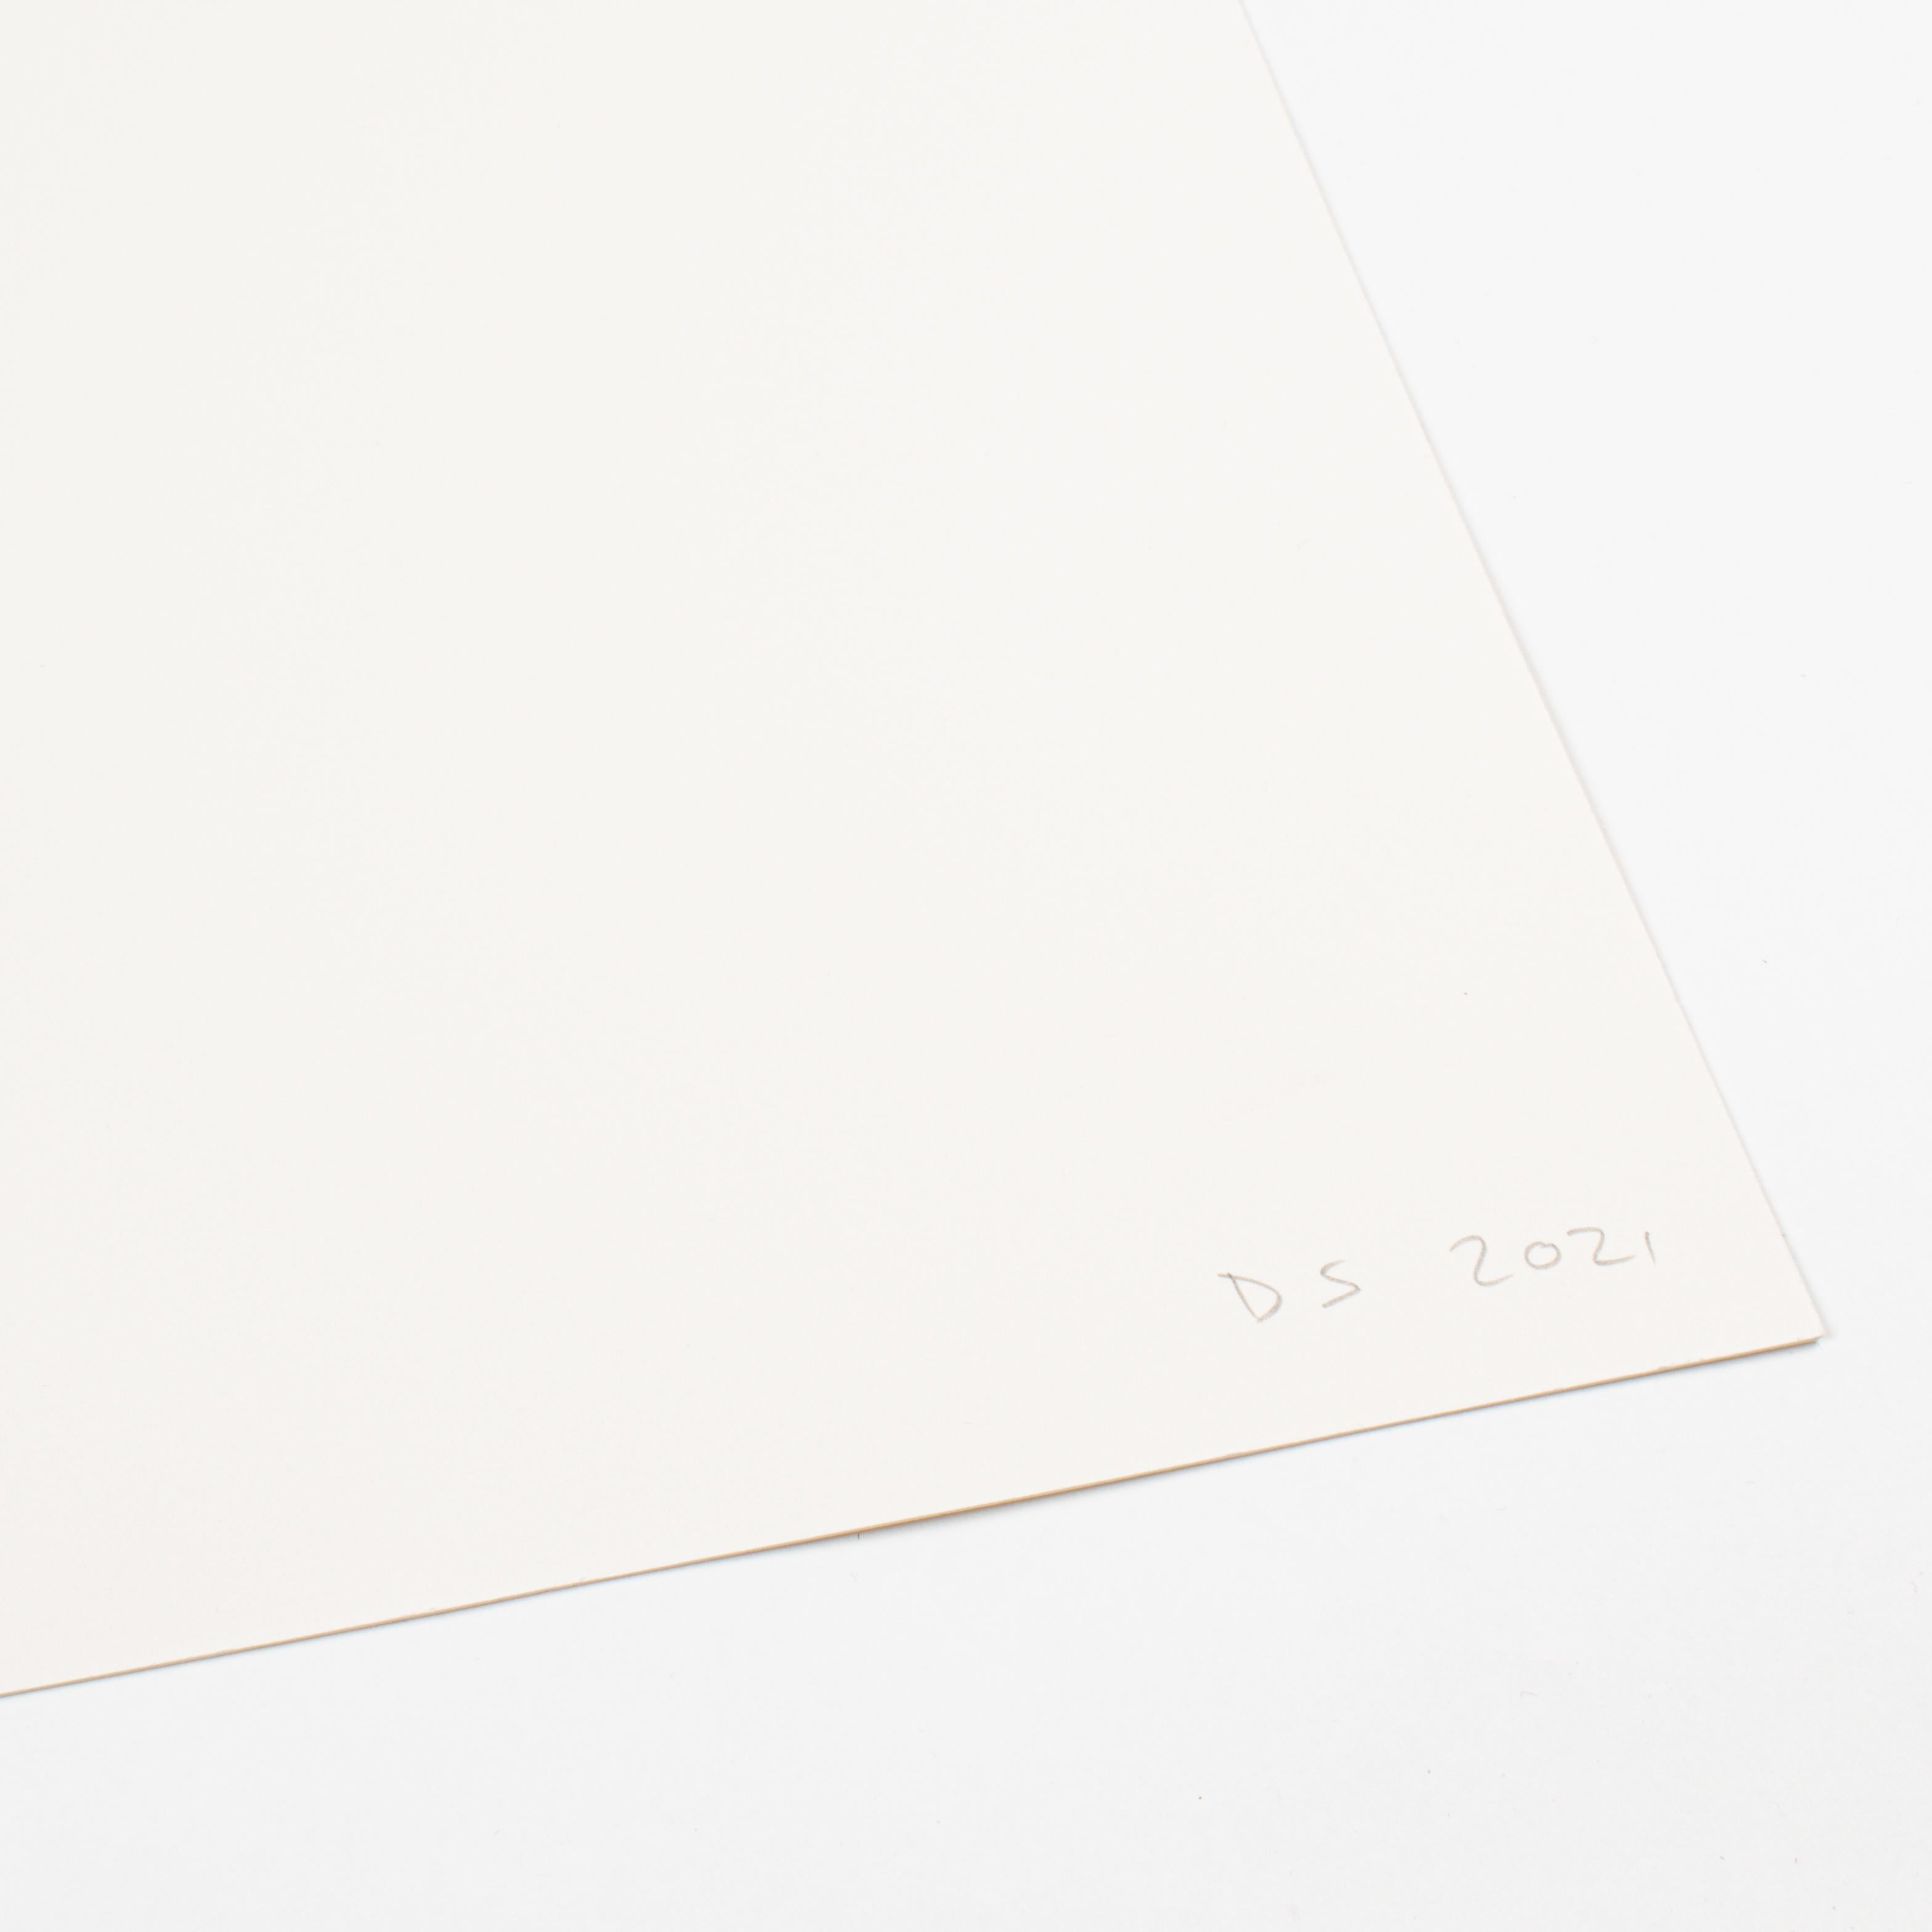 Sérigraphie 12 couleurs avec une superposition de vernis imprimée sur Somerset Satin Tub de 410 g/m².
Edition de 125 + 4 AP's
Signé et numéroté au dos
Menthe. Des imperfections mineures peuvent apparaître en raison du processus de production.